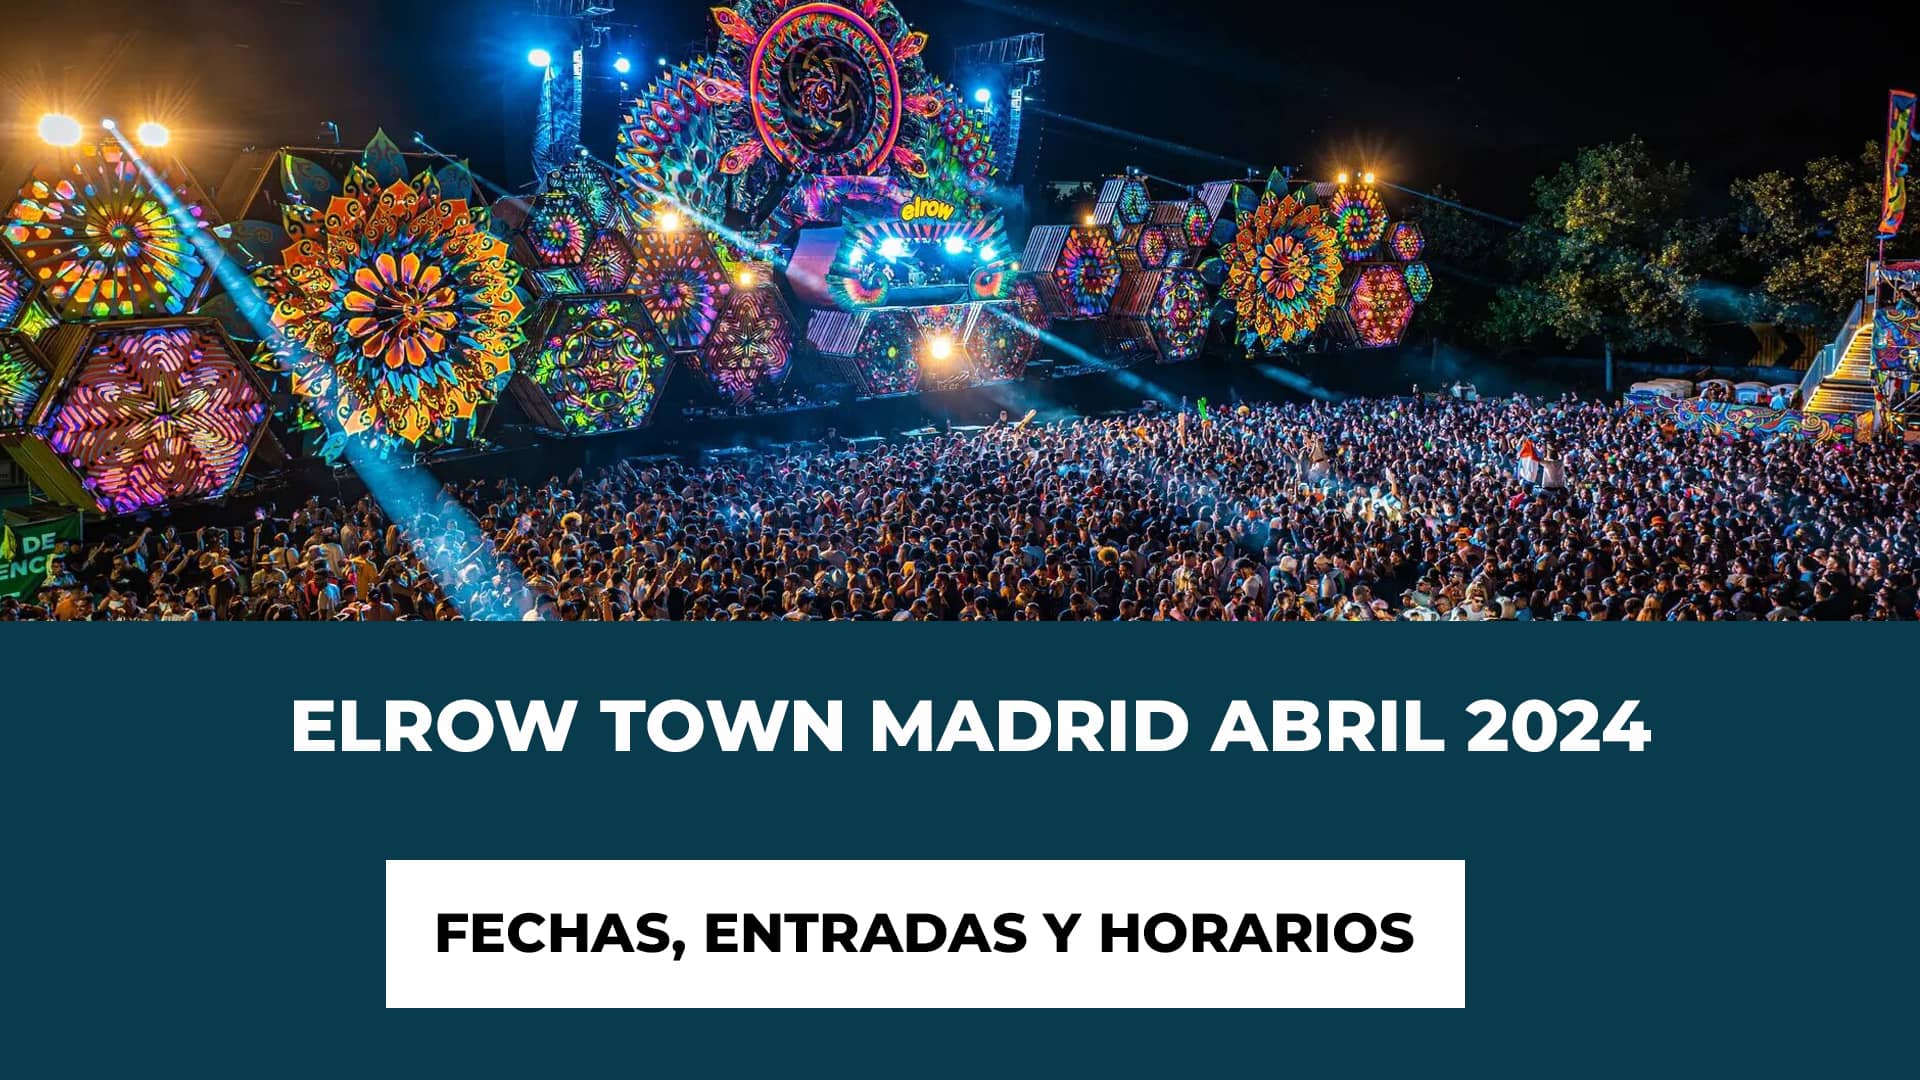 Elrow Town Madrid Abril 2024: Fechas - Line-Up Impresionante - Locura Creativa - Entradas a partir del 7 de noviembre - Horarios